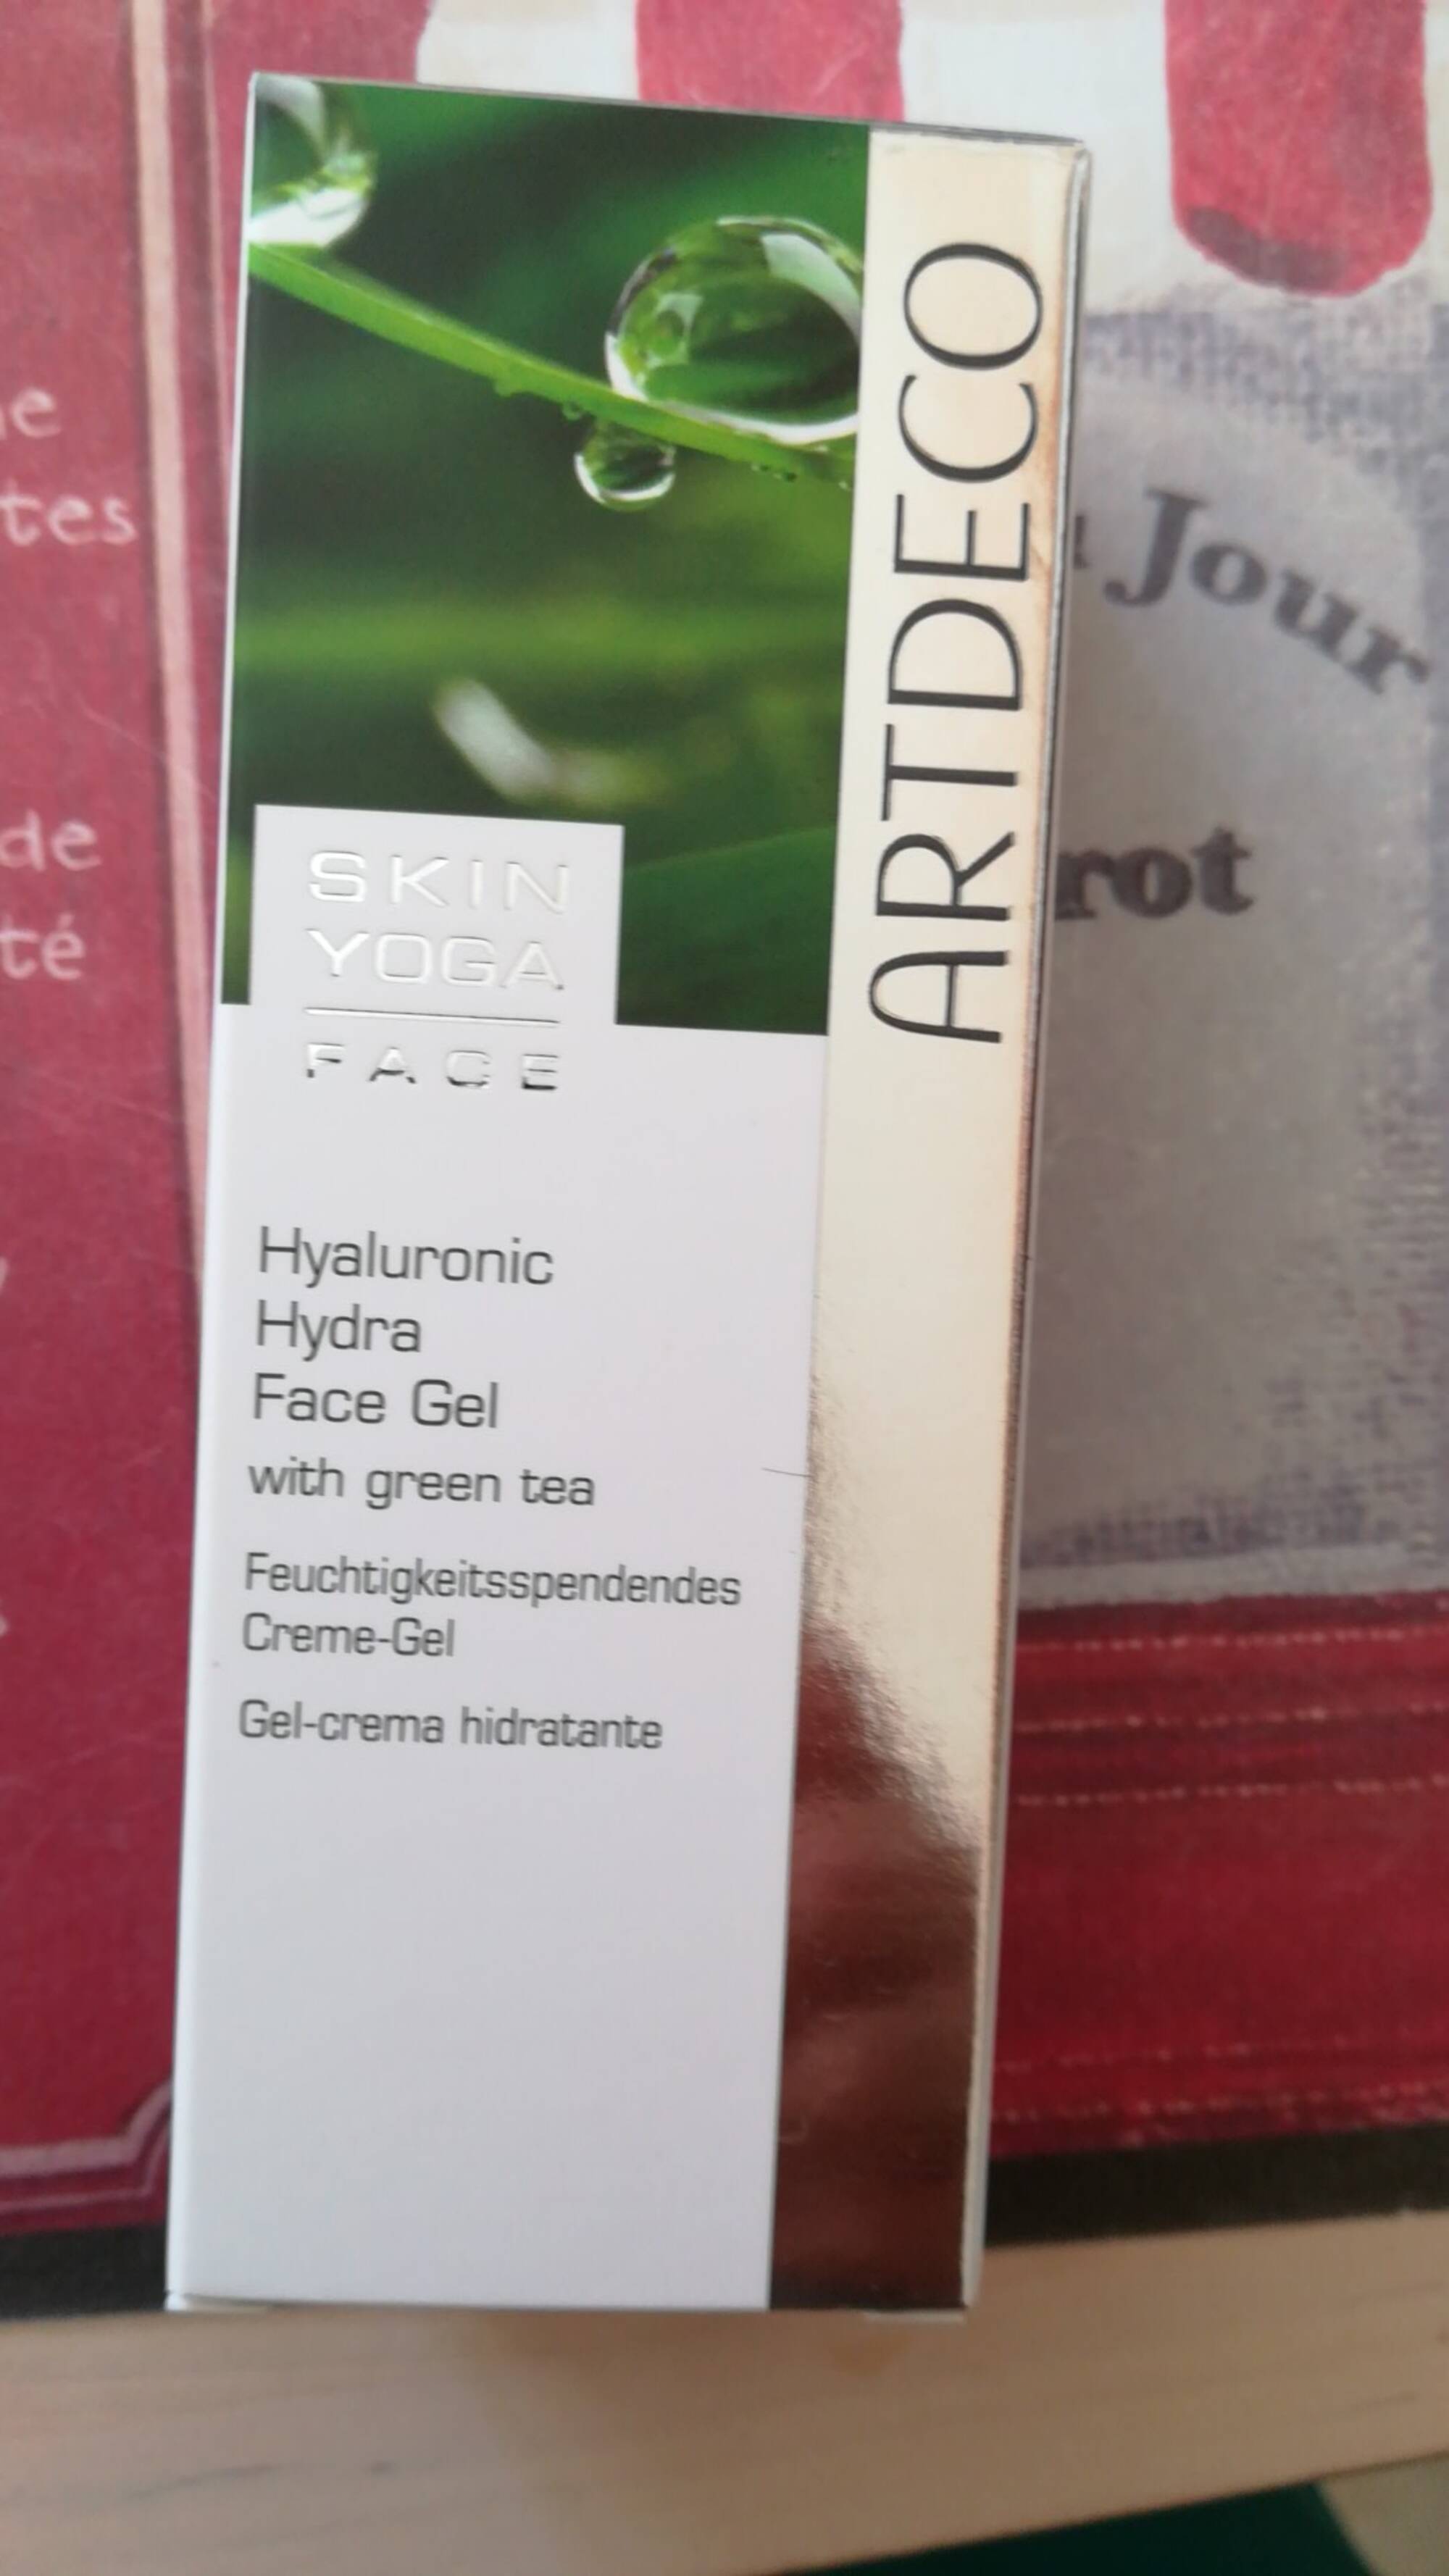 ARTDECO - Skin yoga - Hyaluronic hydra face gel